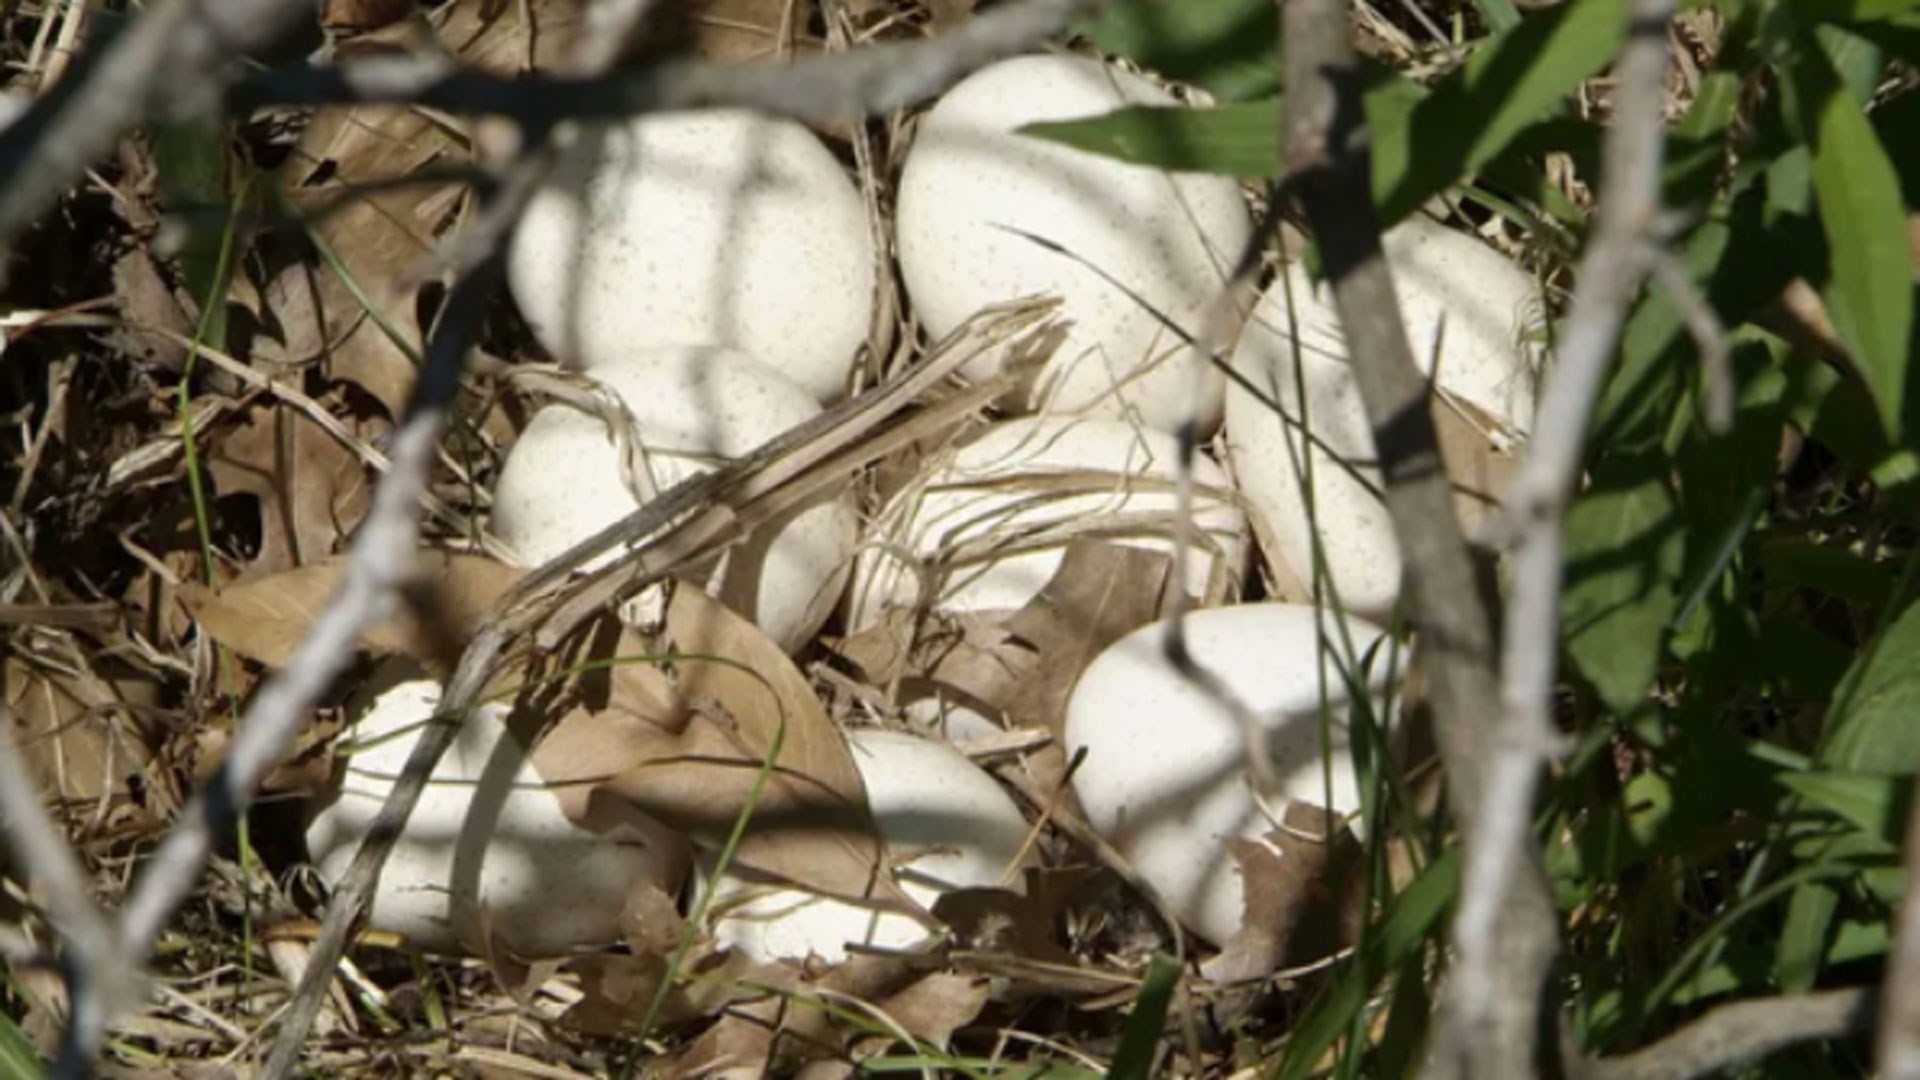 Turkey nest full of eggs